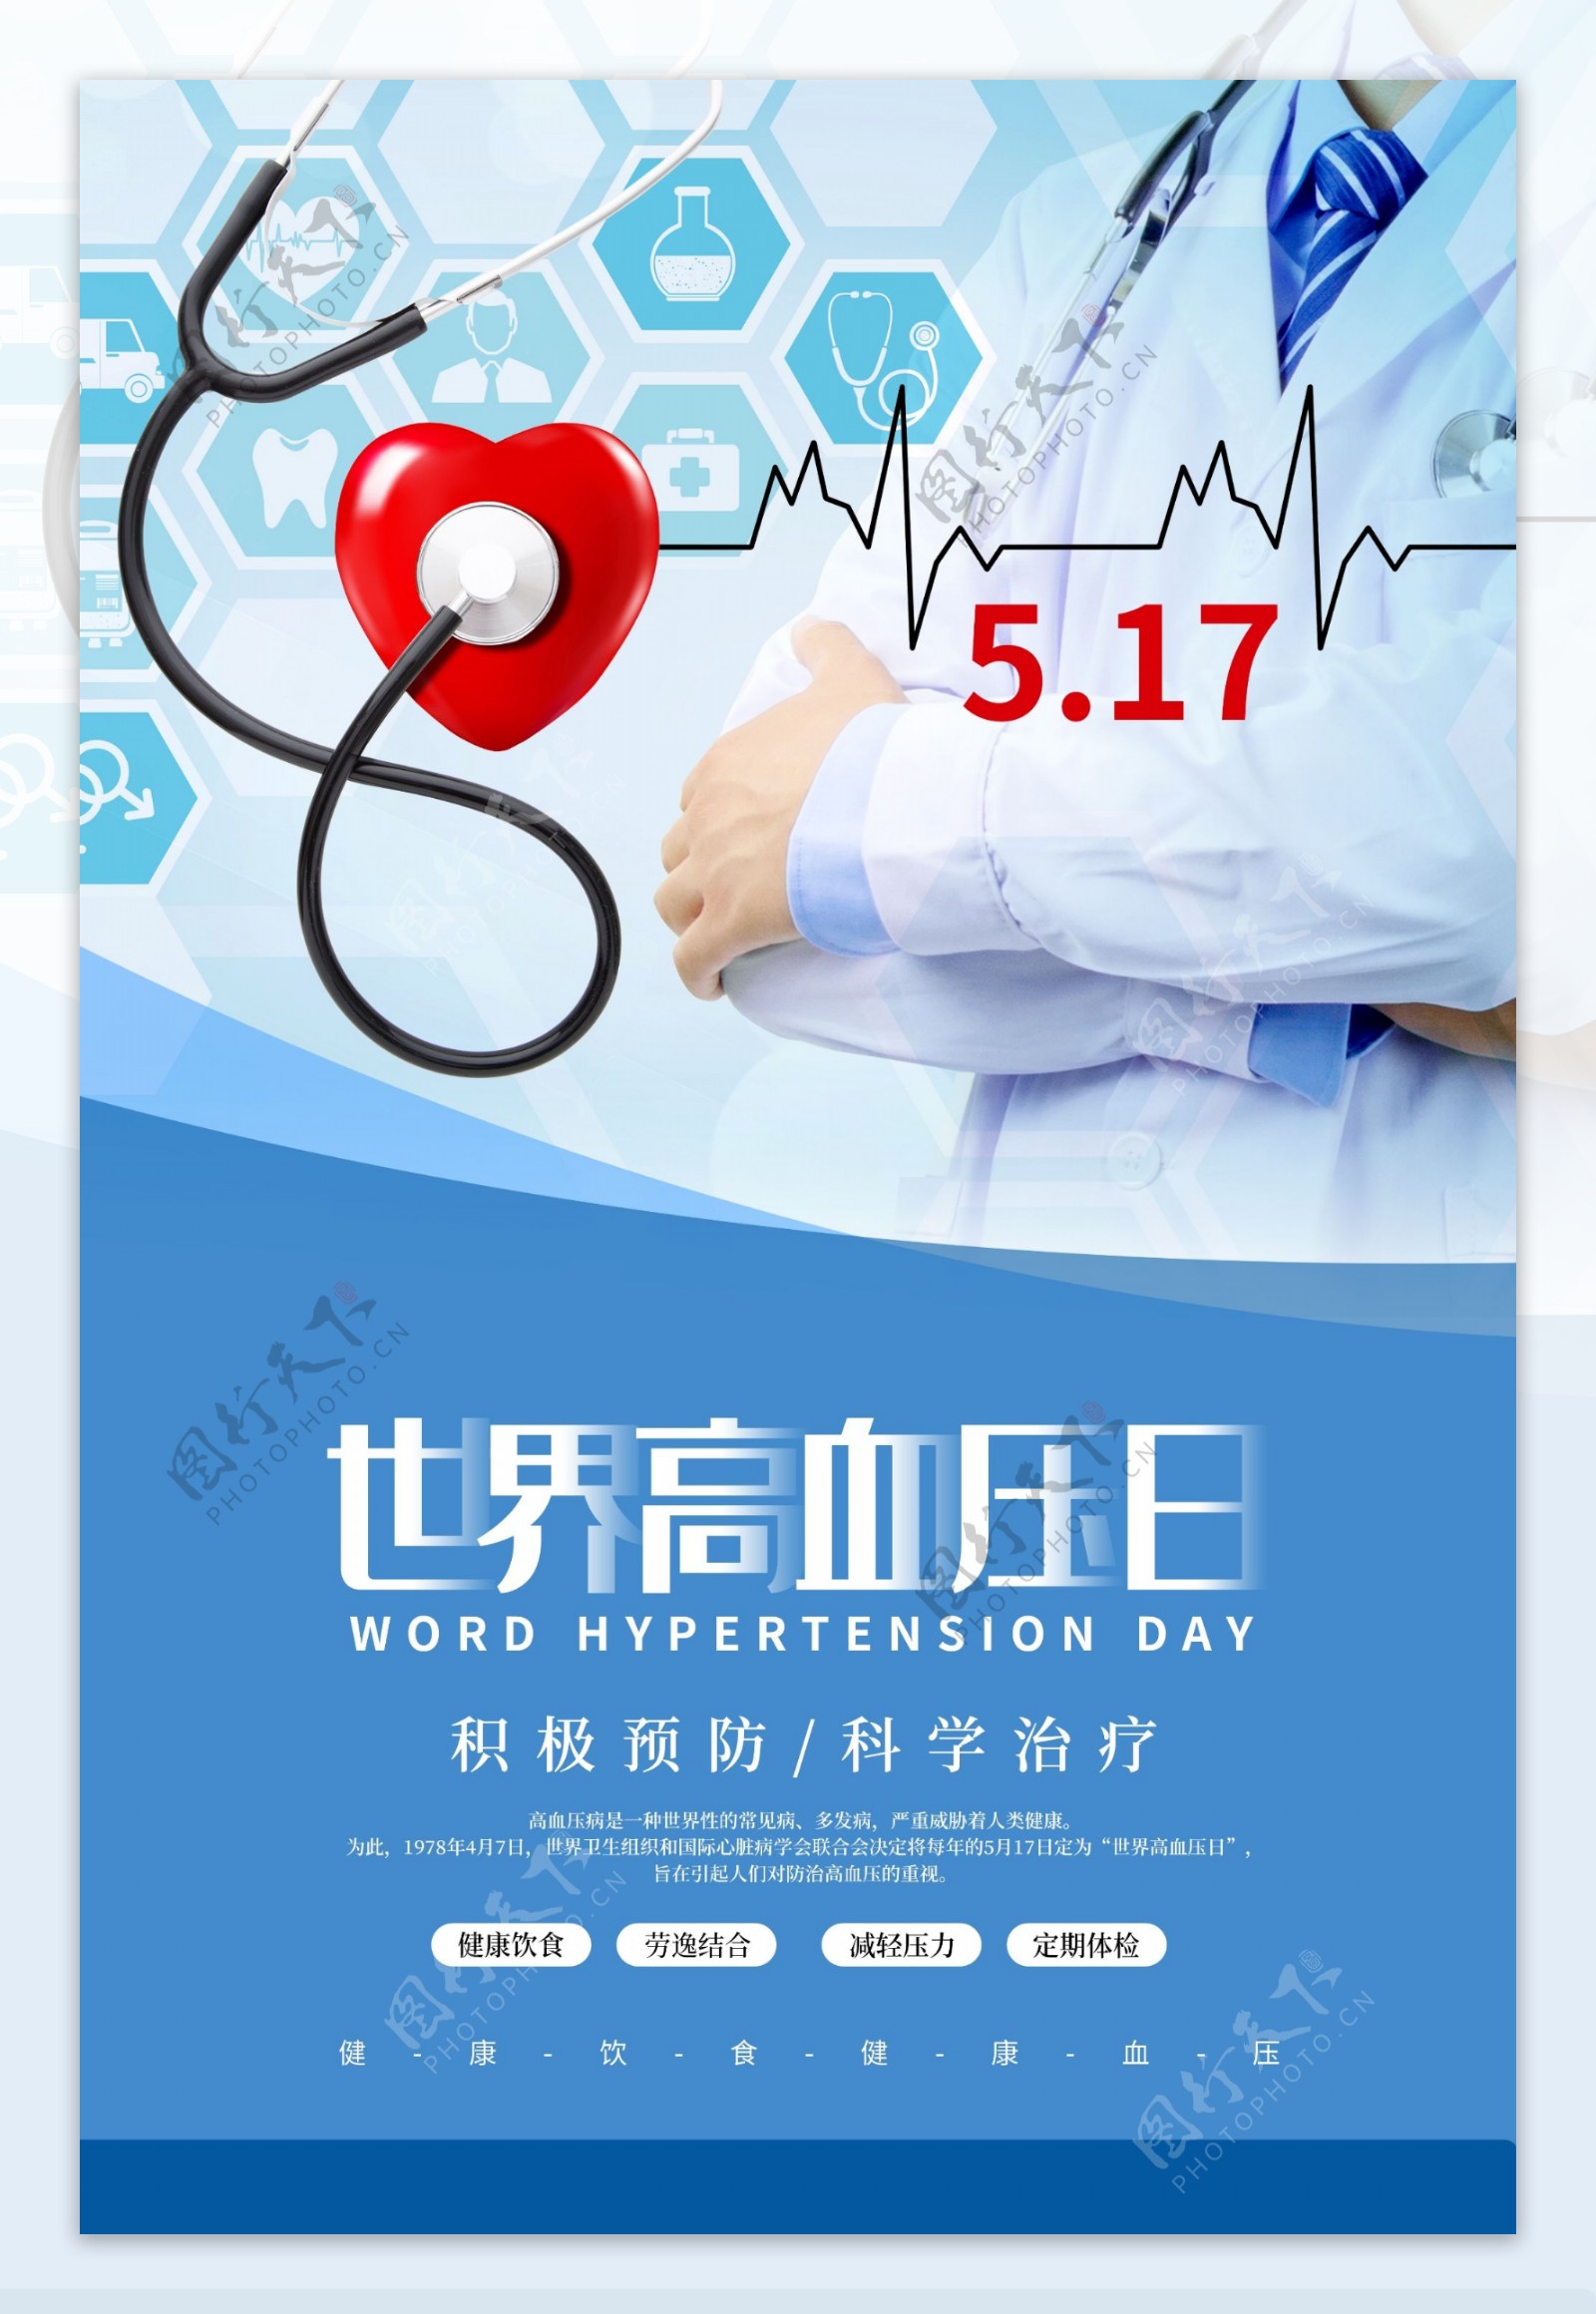 世界高血压日